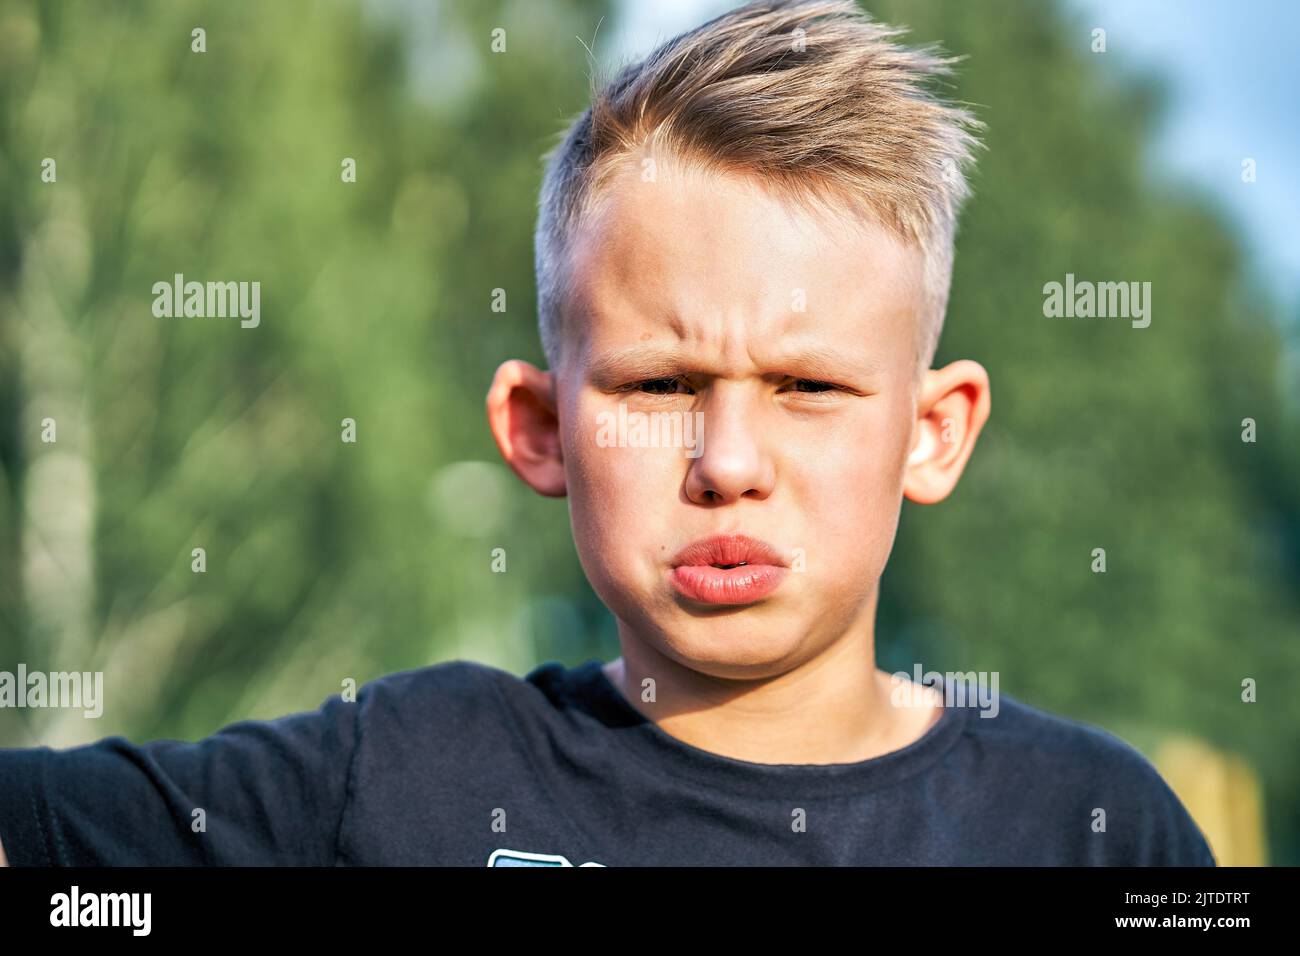 Bambino frustrato con una breve acconciatura in posa per la fotocamera verde offuscato soleggiato estate parco cittadino estrema closeup Foto Stock